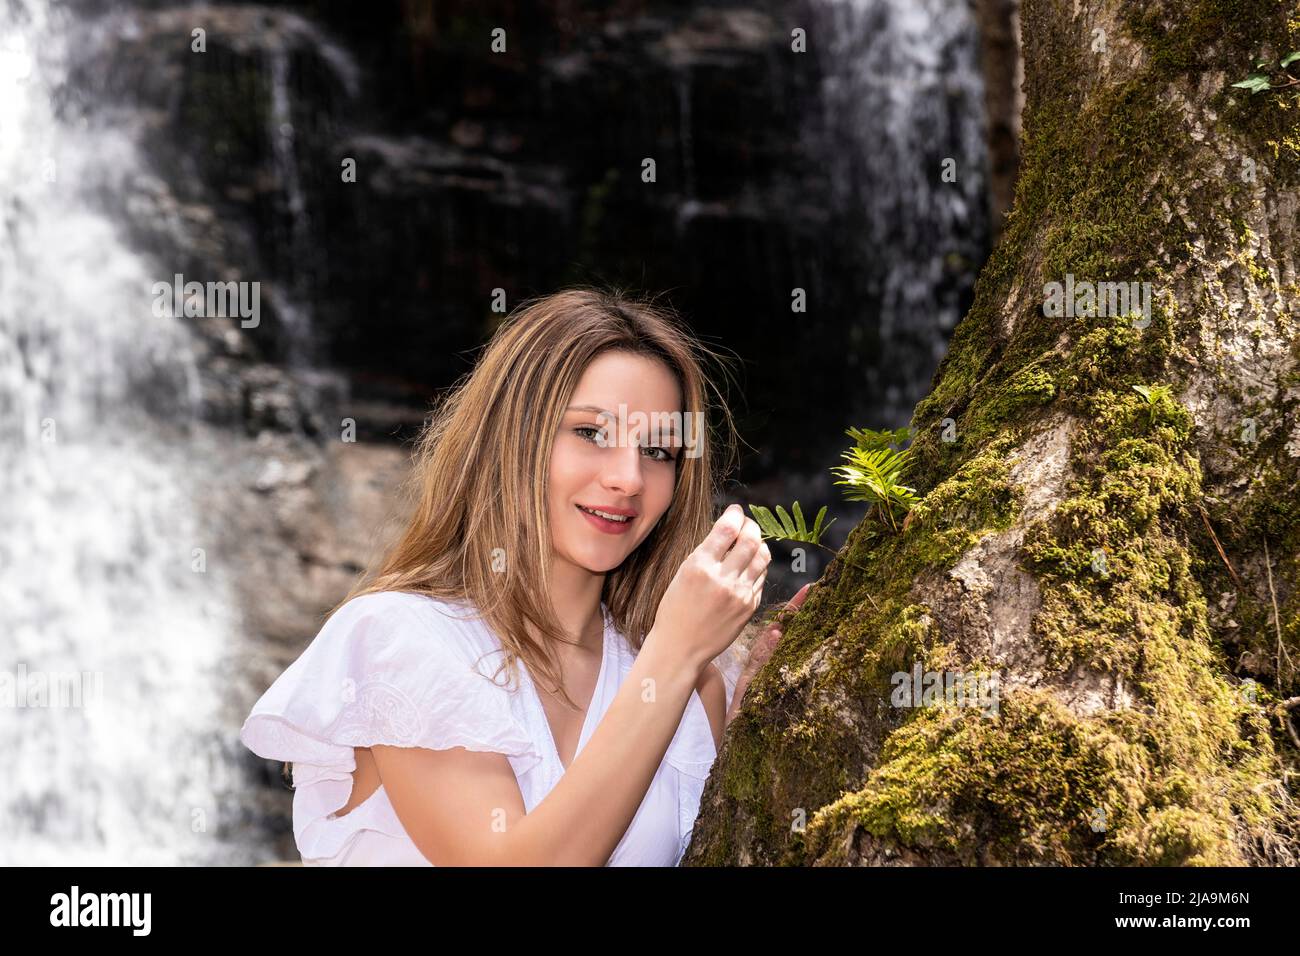 donna bionda sorridente nella foresta con una cascata Foto Stock